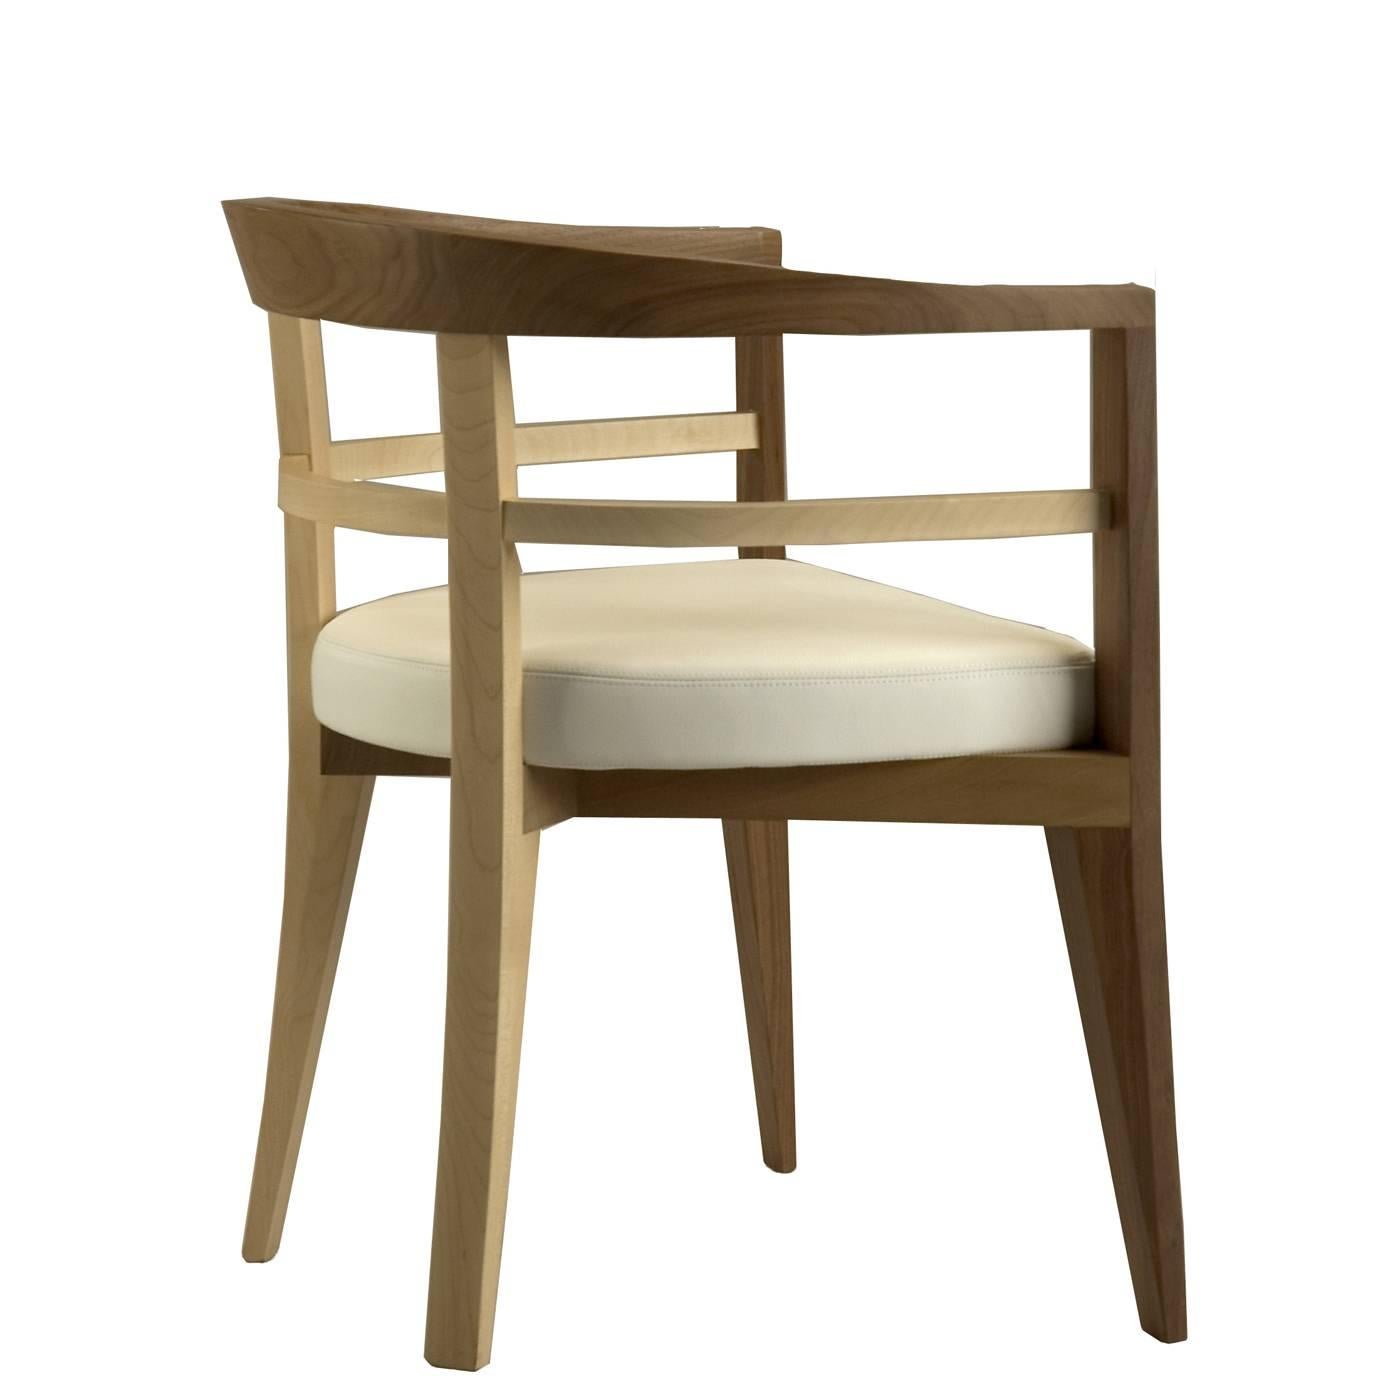 Ce fauteuil exquis a été conçu par Franco Poli avec un dossier courbé pour un confort maximal et réalisé avec la combinaison de deux bois précieux : l'érable et le noyer. Les pieds arrière légèrement courbés, le double anneau autour de l'accoudoir